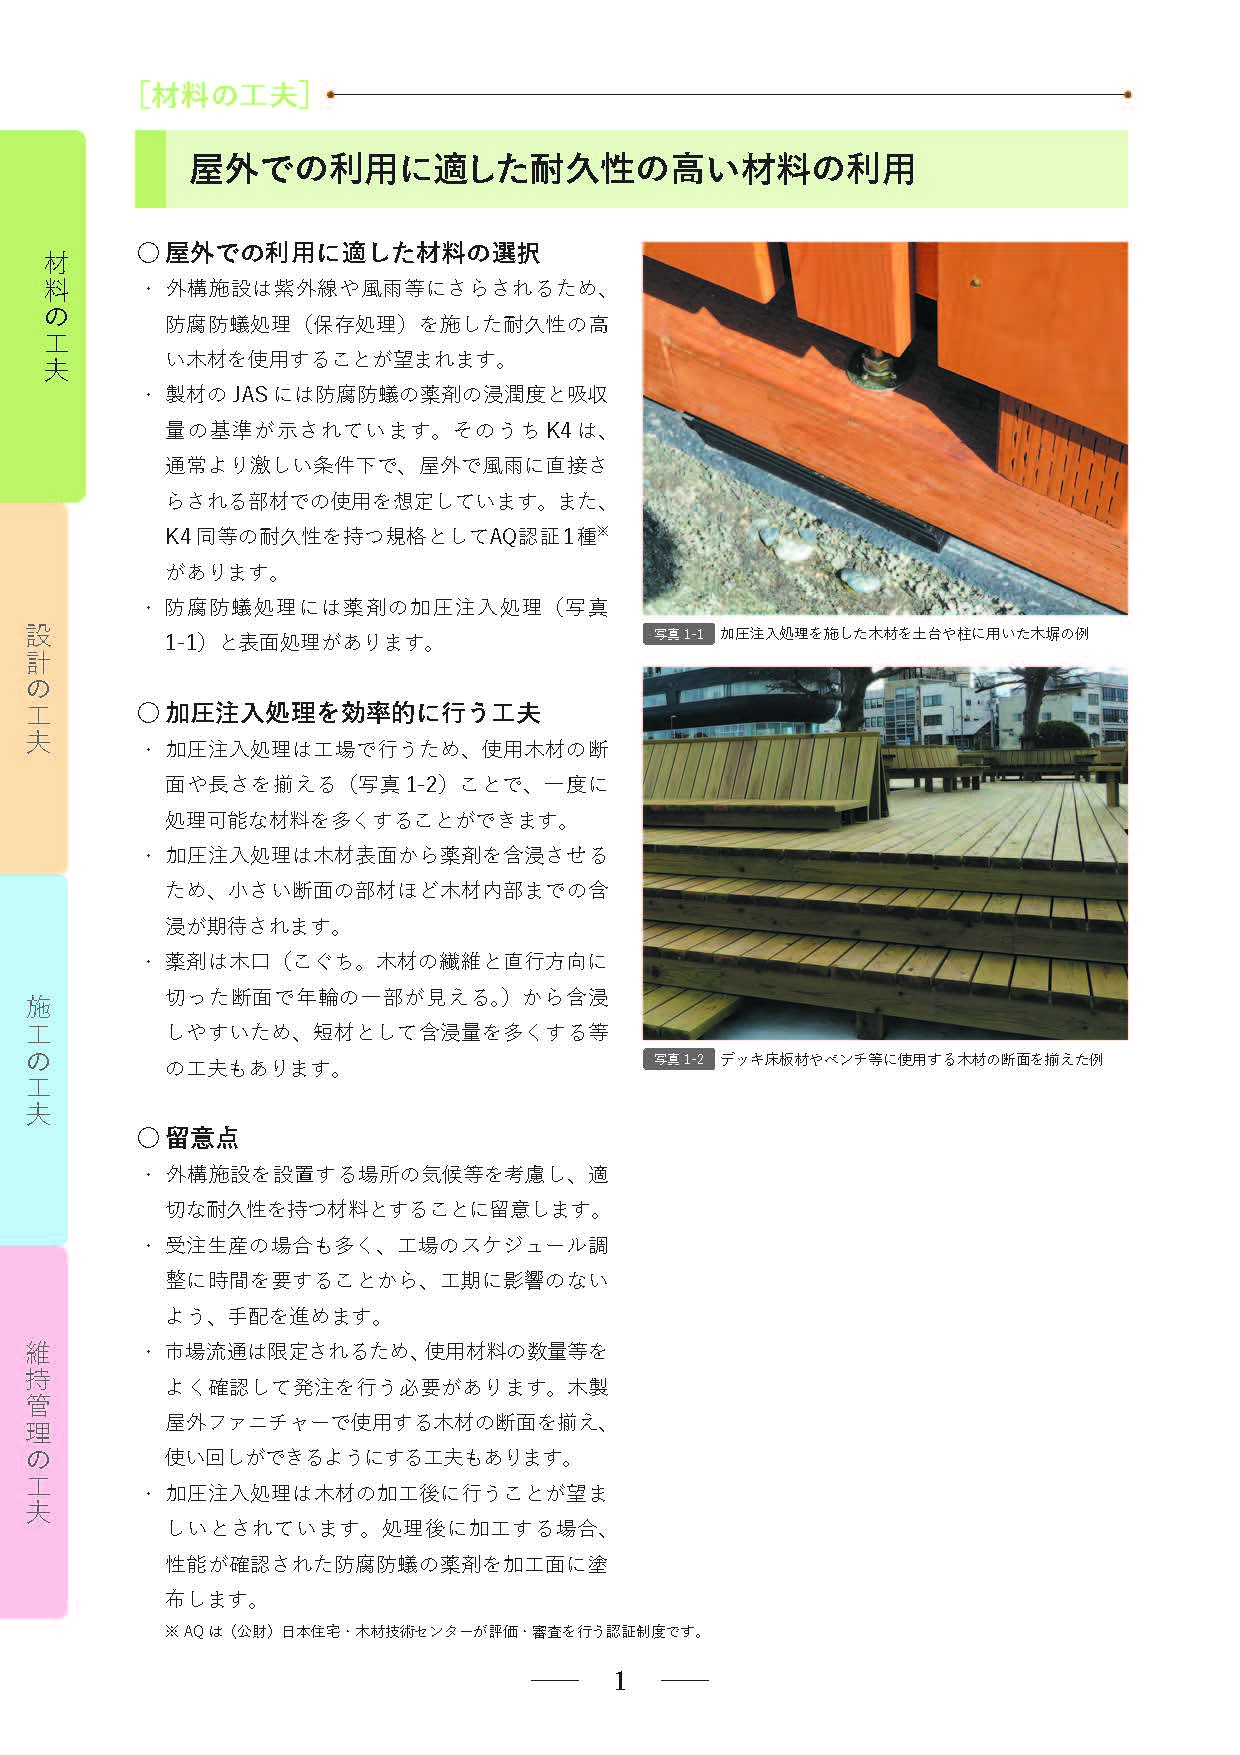 冊子「初心者のための木質外構施設の長期使用に役立つ！材料・設計・施工・維持管理の工夫」を公表しました